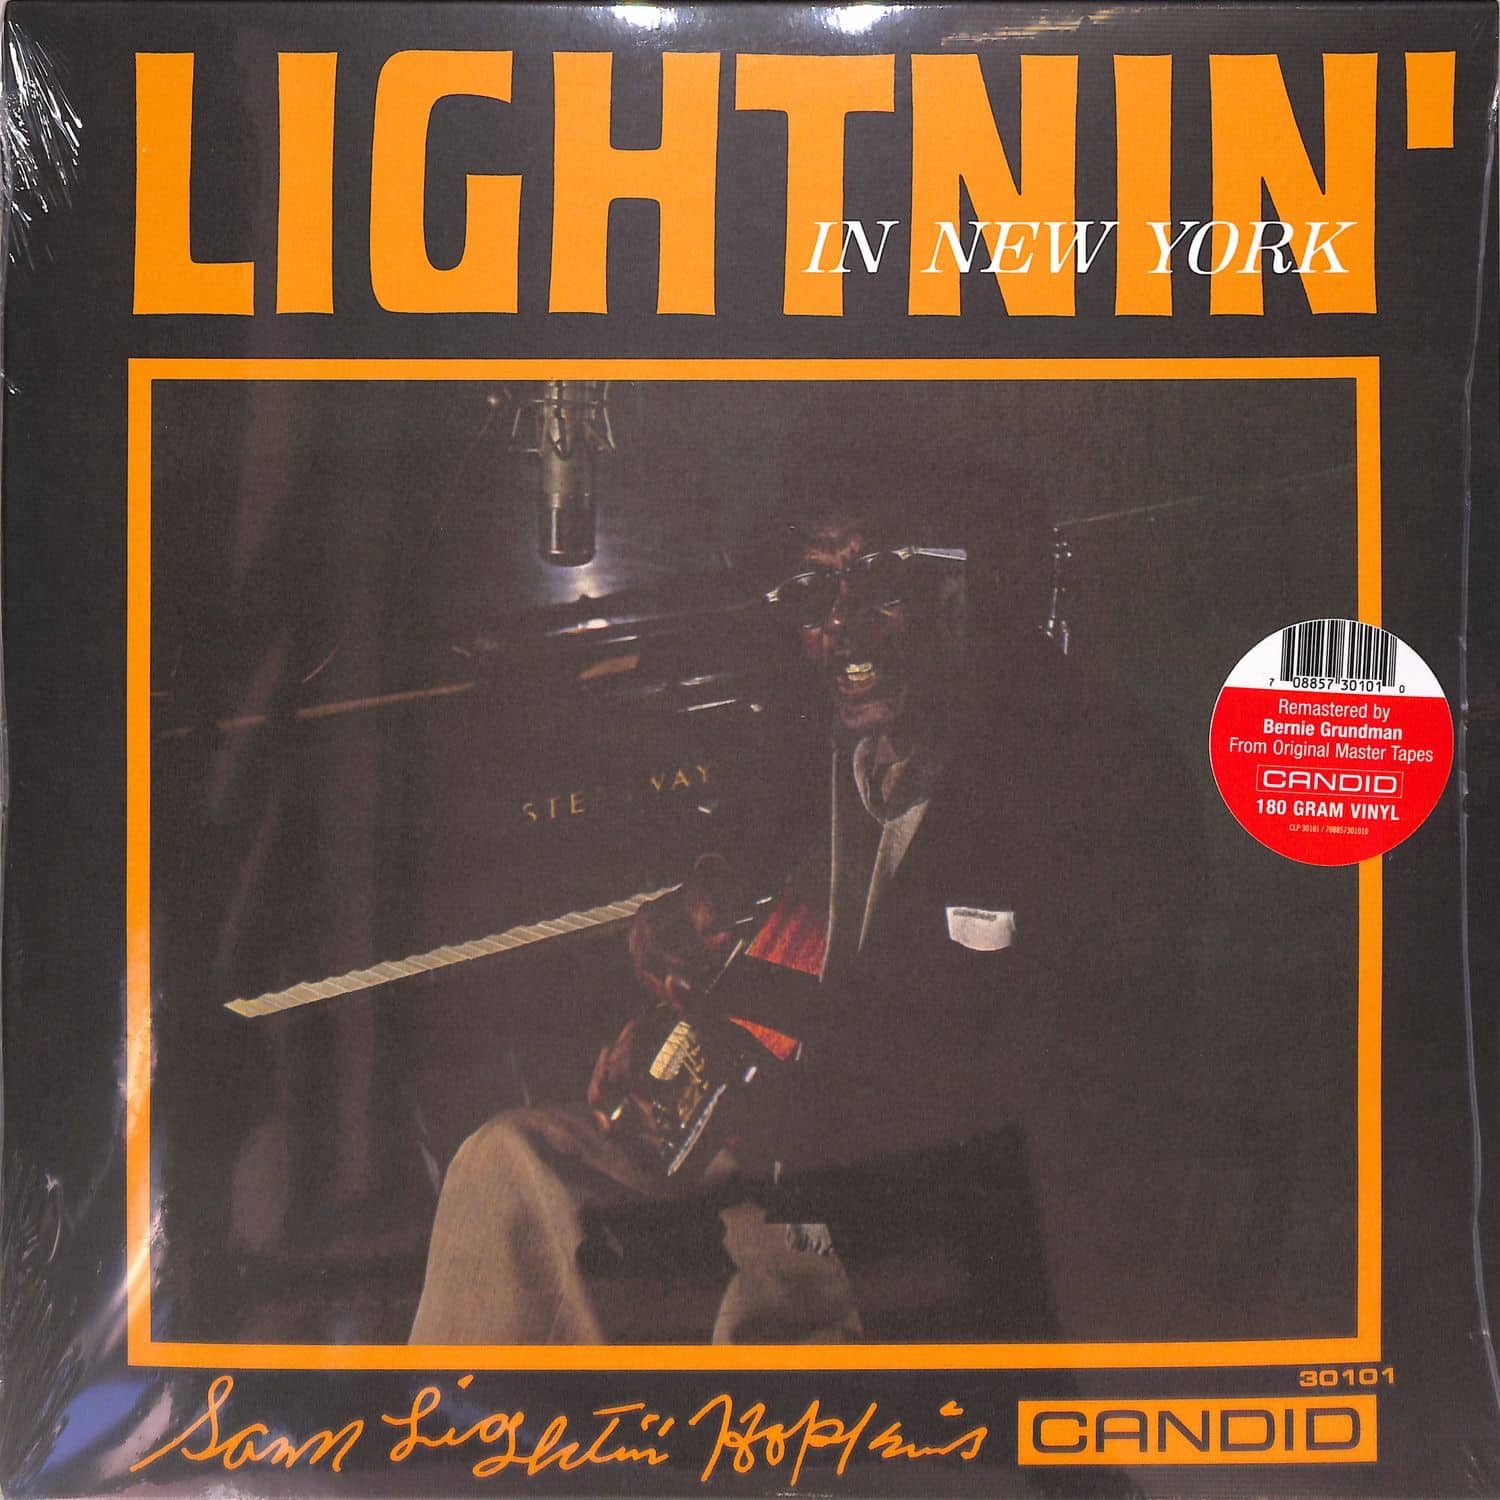 Lightnin Hopkins - LIGHTNIN IN NEW YORK 